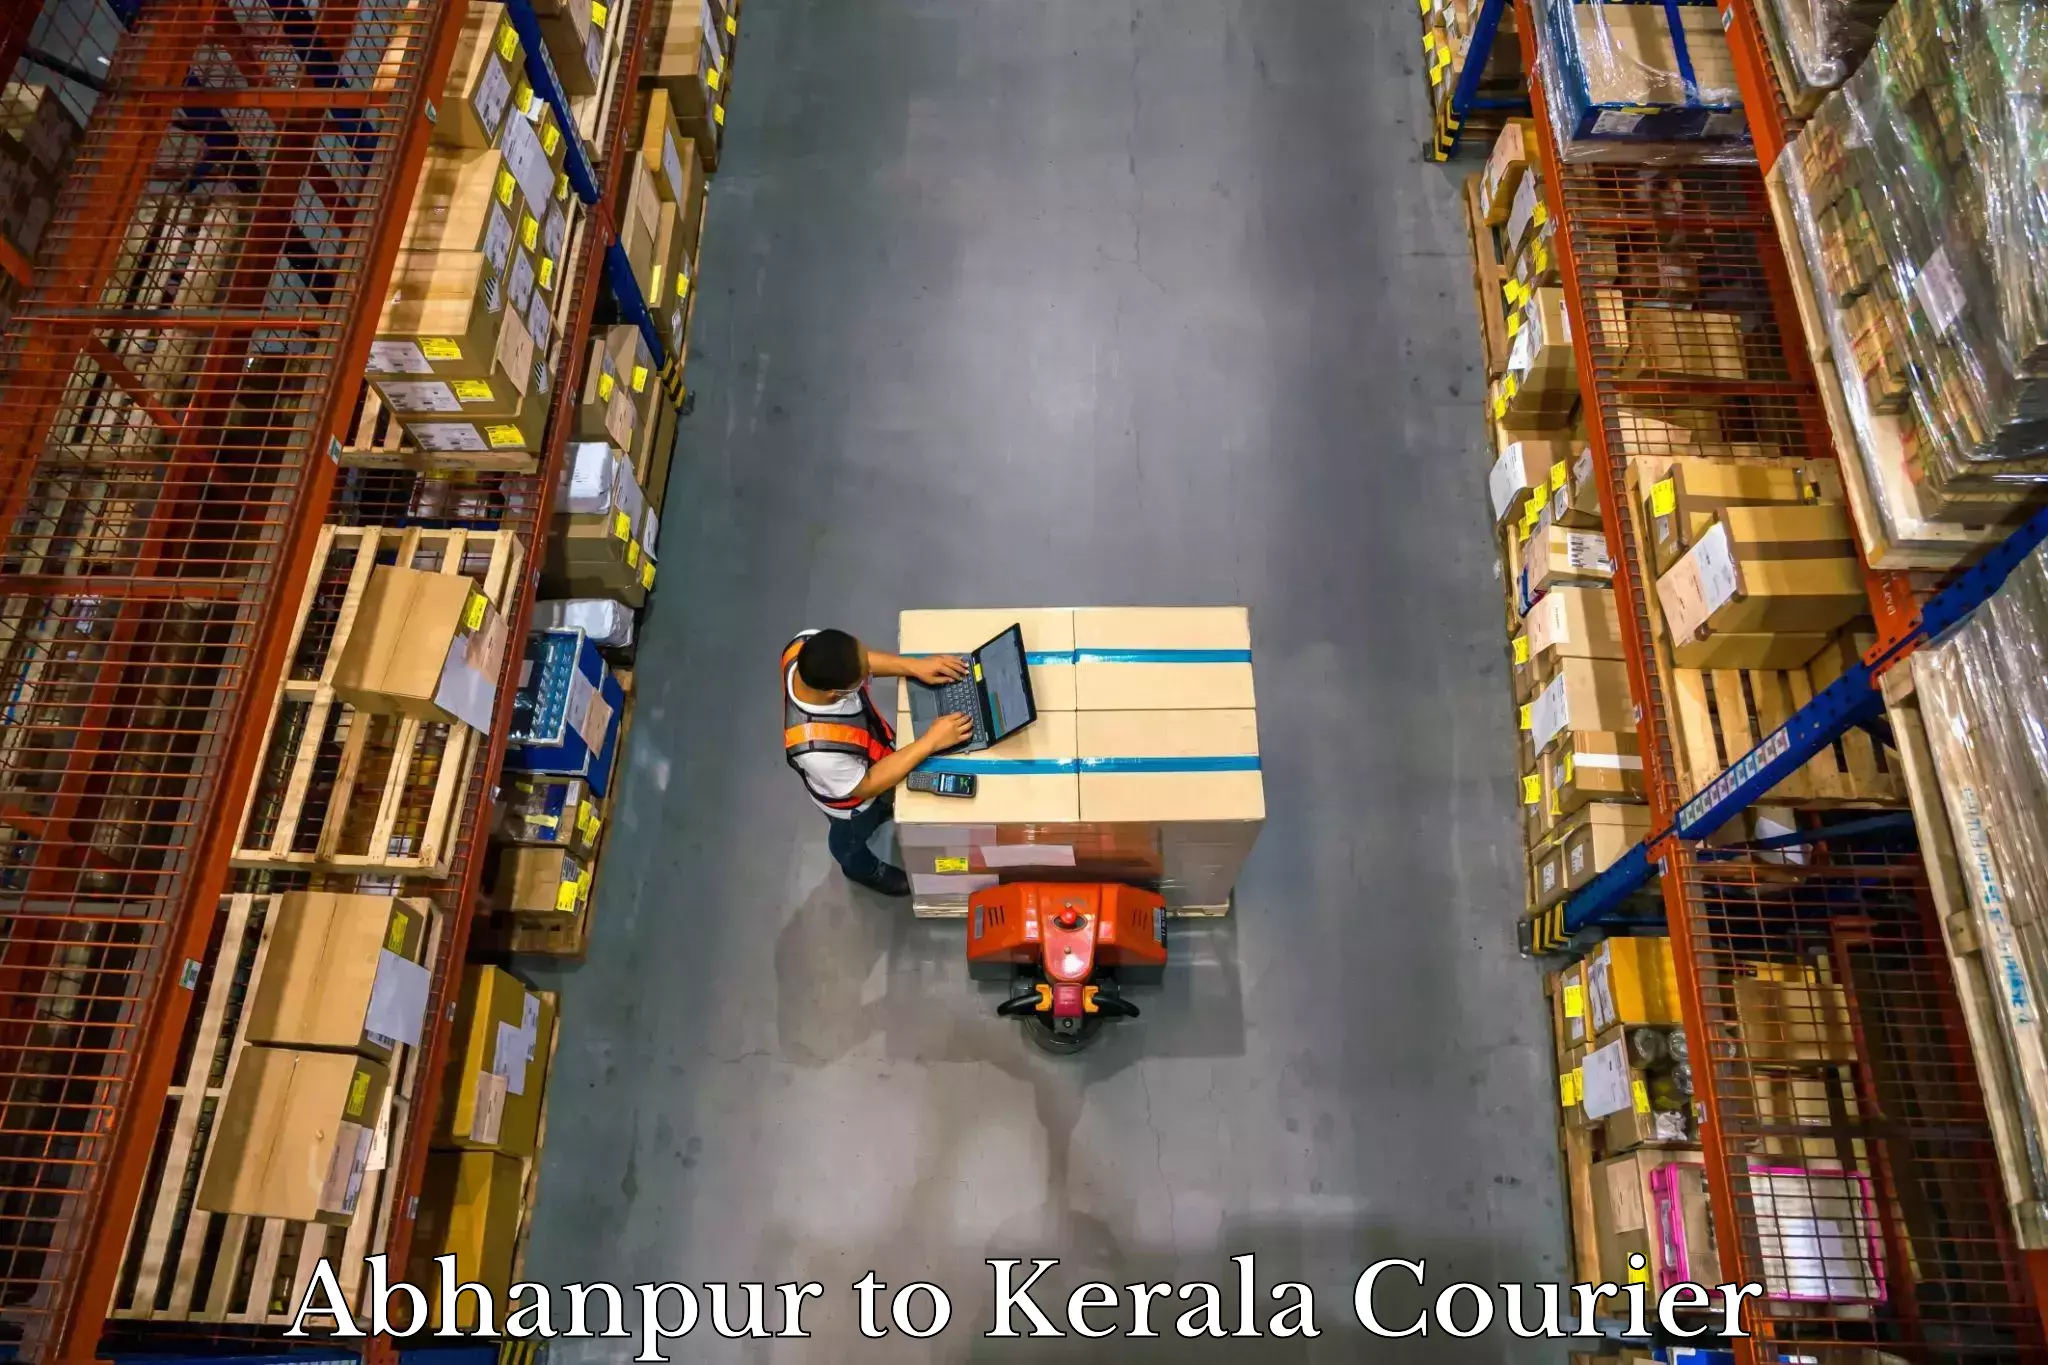 Door-to-door baggage service Abhanpur to Kerala